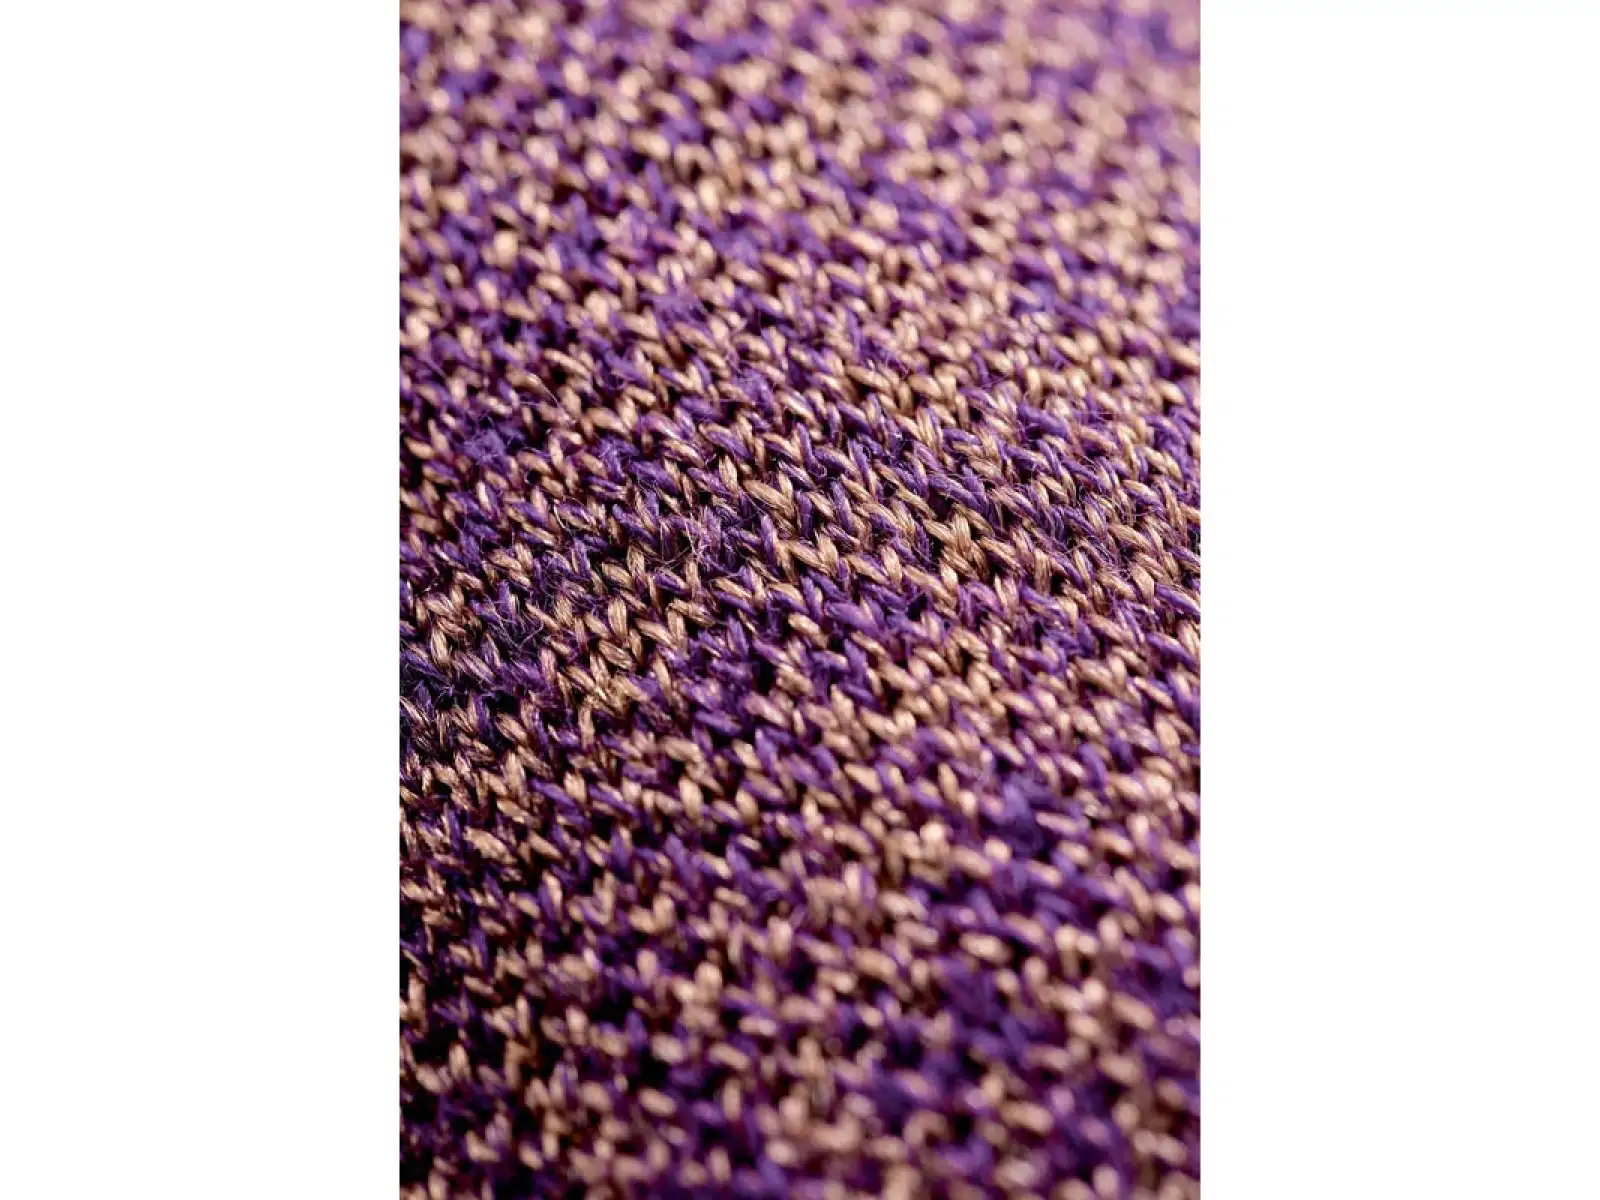 Thermic Ski Merino Reflector dámské ponožky purple/gold